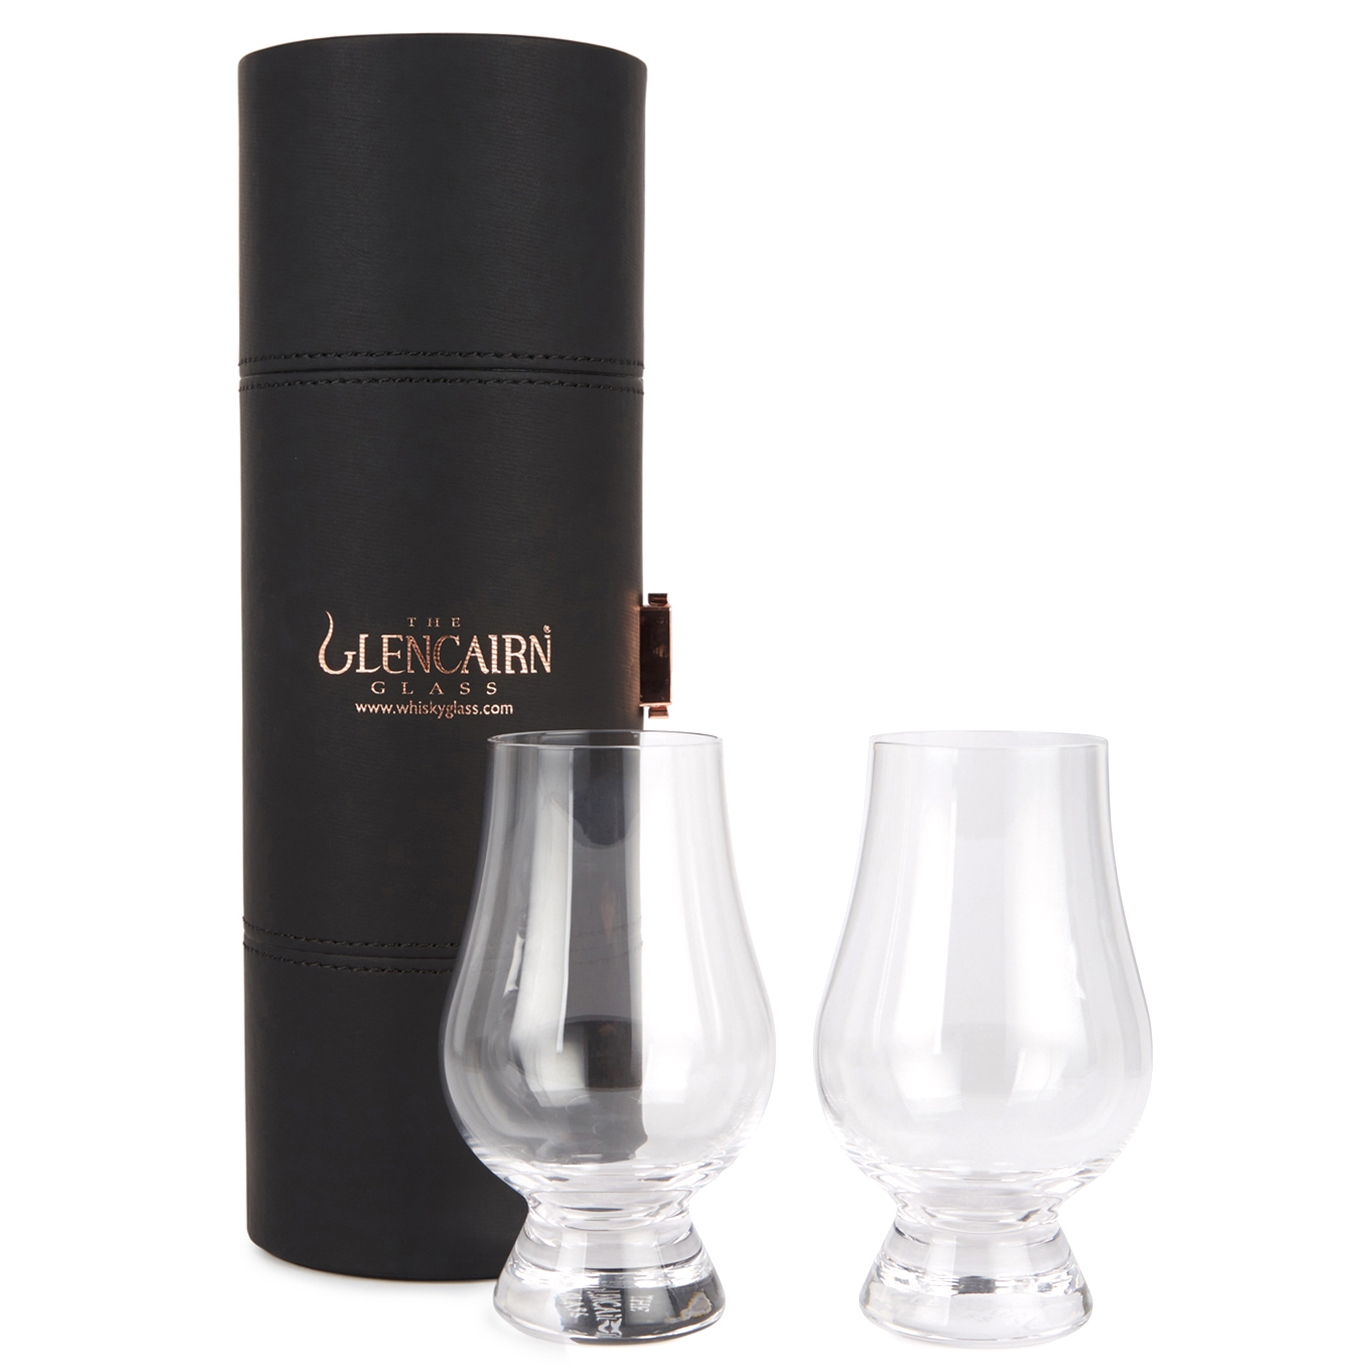 Glencairn Glassware The Glencairn Official Whisky Glass Travel Case